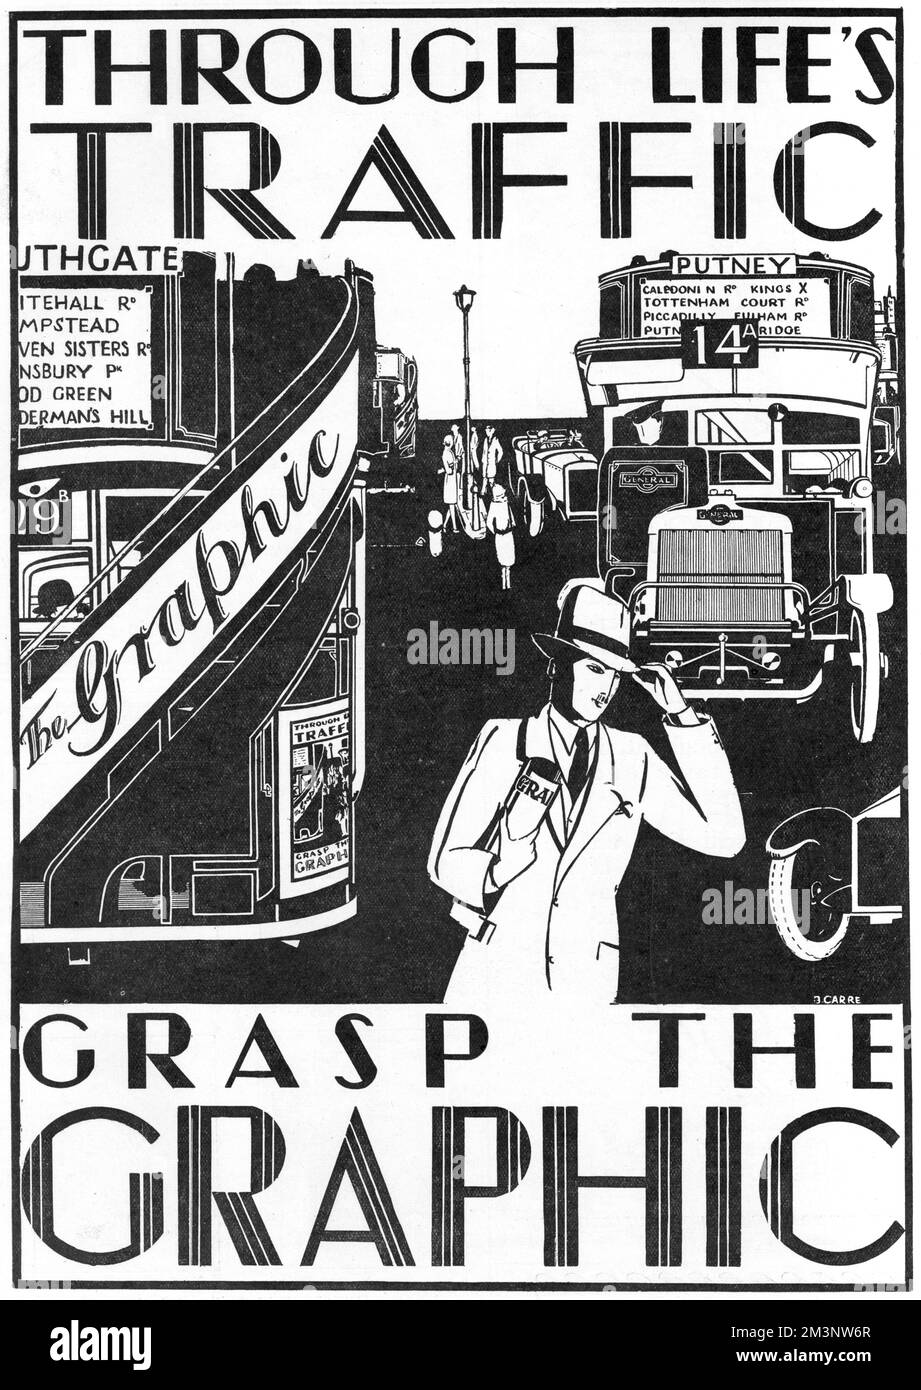 Die 1869 von William Luson Thomas gegründete Graphic ist eine eindrucksvolle Werbung für das wöchentliche illustrierte Magazin The Graphic, das eine geschäftige Straßenszene zeigt, in der Busse und Straßenbahnen für die Zeitung werben. Auf der Schlagzeile steht, durch Life's Traffic, Grab the Graphic. Veröffentlicht im Beisein, Schwesterpapier von The Graphic. Im darauf folgenden Jahr waren beide Publikationen von den illustrierten London News gekauft worden und wurden Teil der "Großen Acht". Datum: 1927 Stockfoto